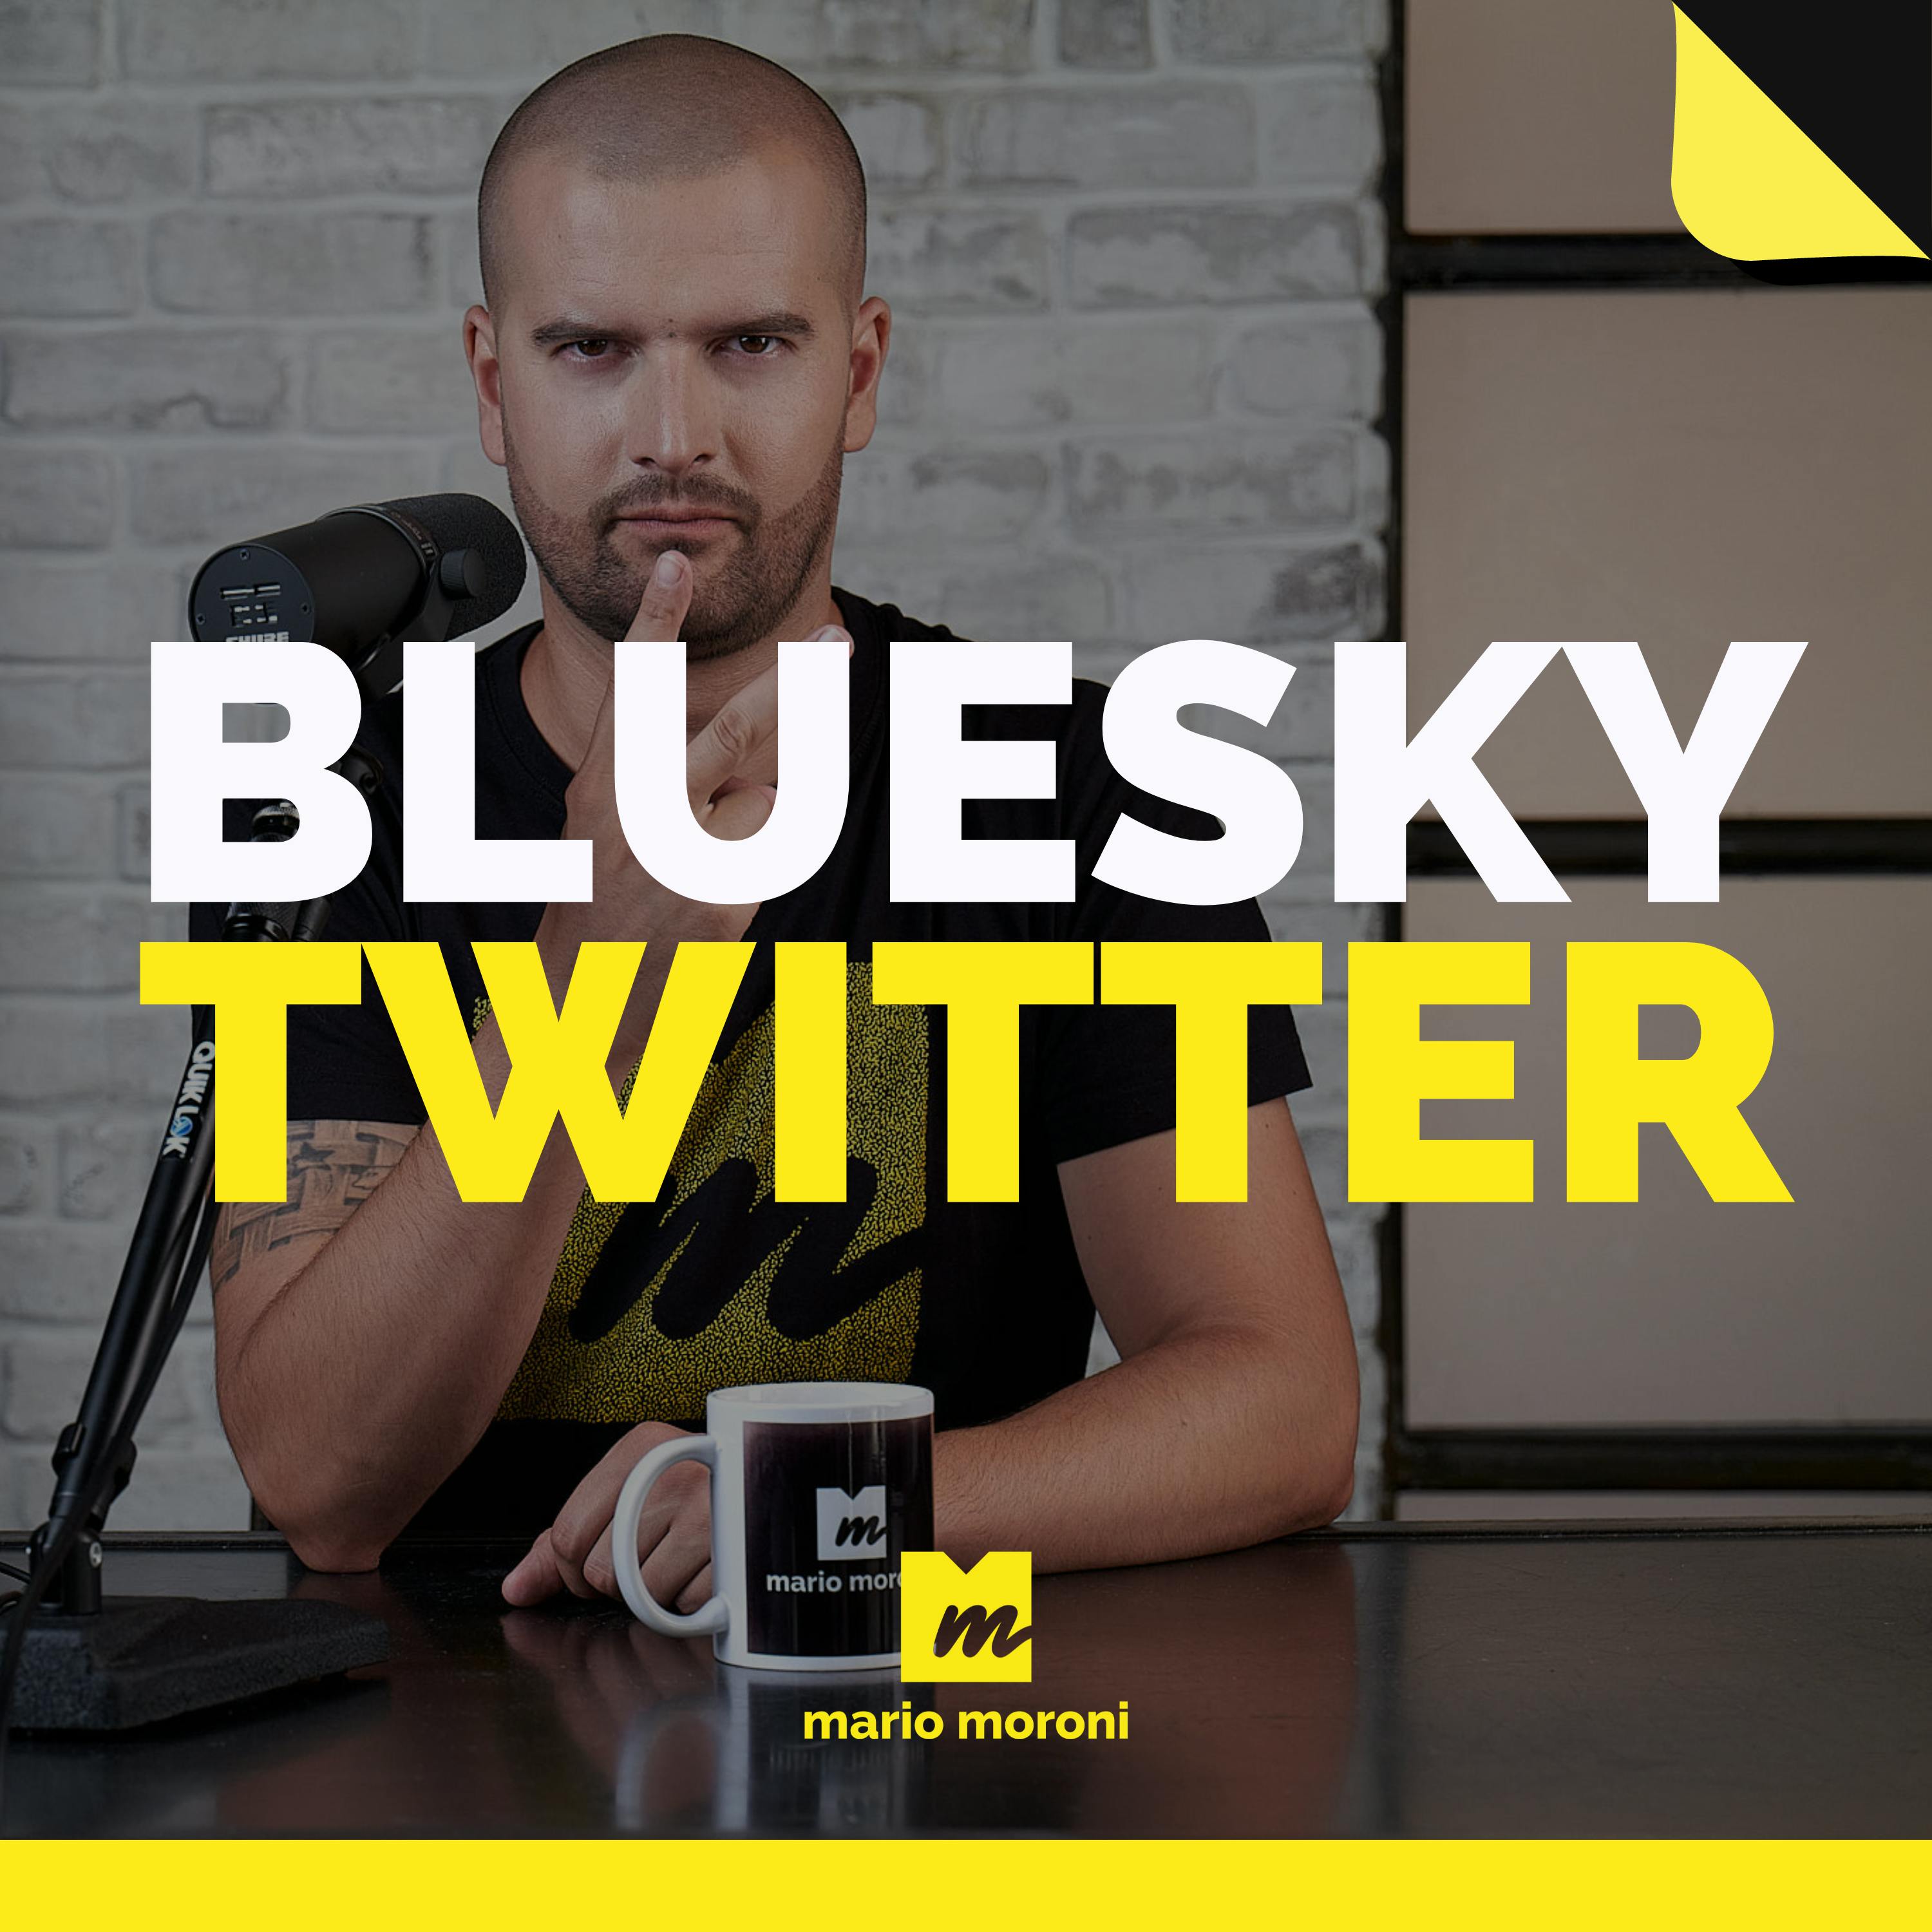 Bluesky: la nuova piattaforma social di Jack Dorsey (ex Twitter) alla conquista del mercato